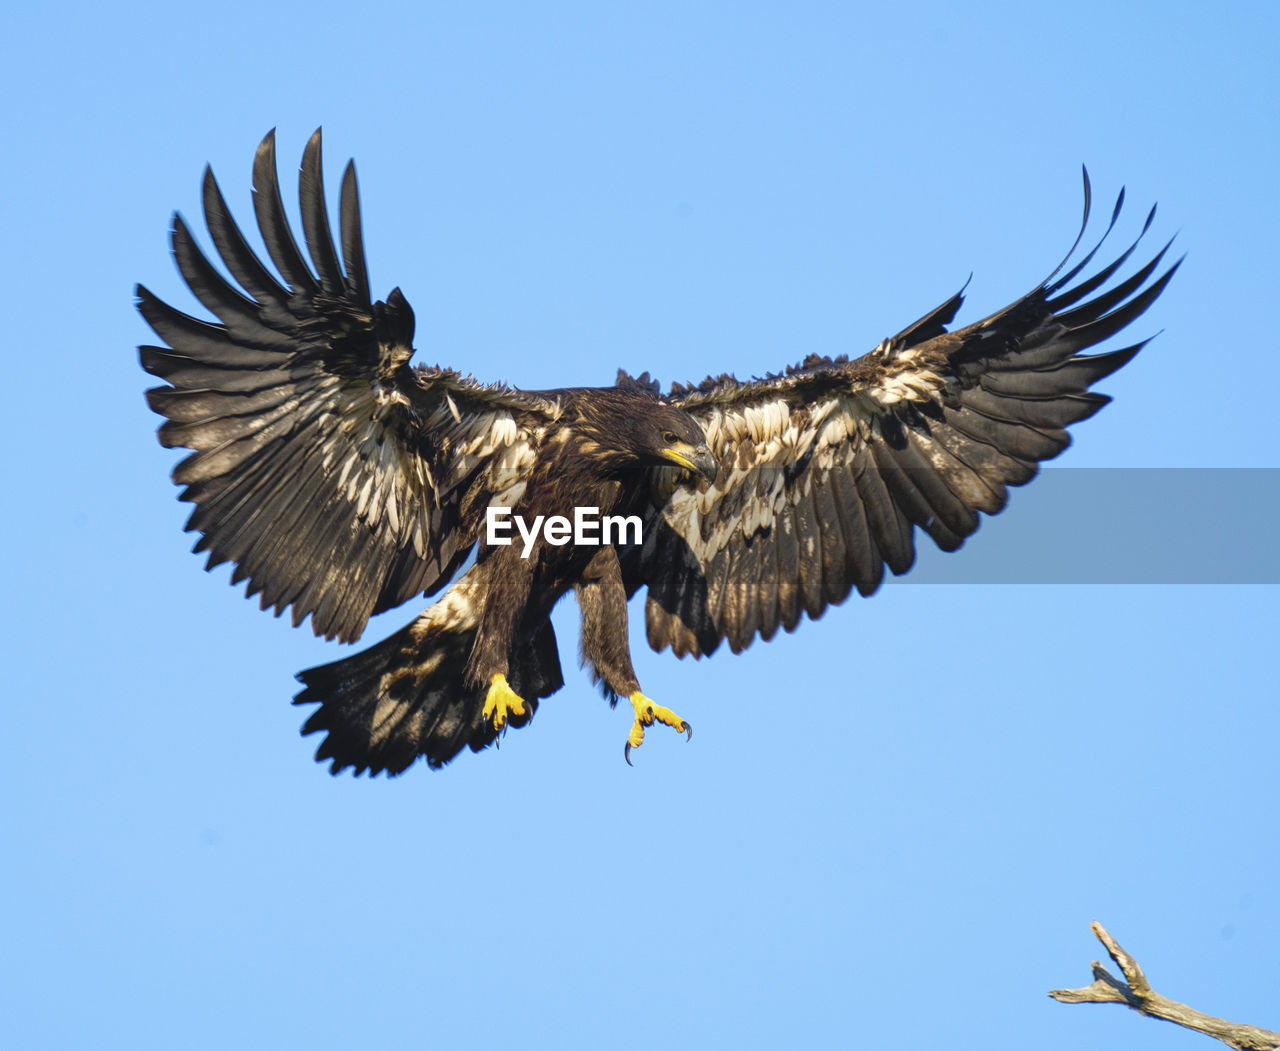 Juvenile bald eagle fledgling first flight lands on tree